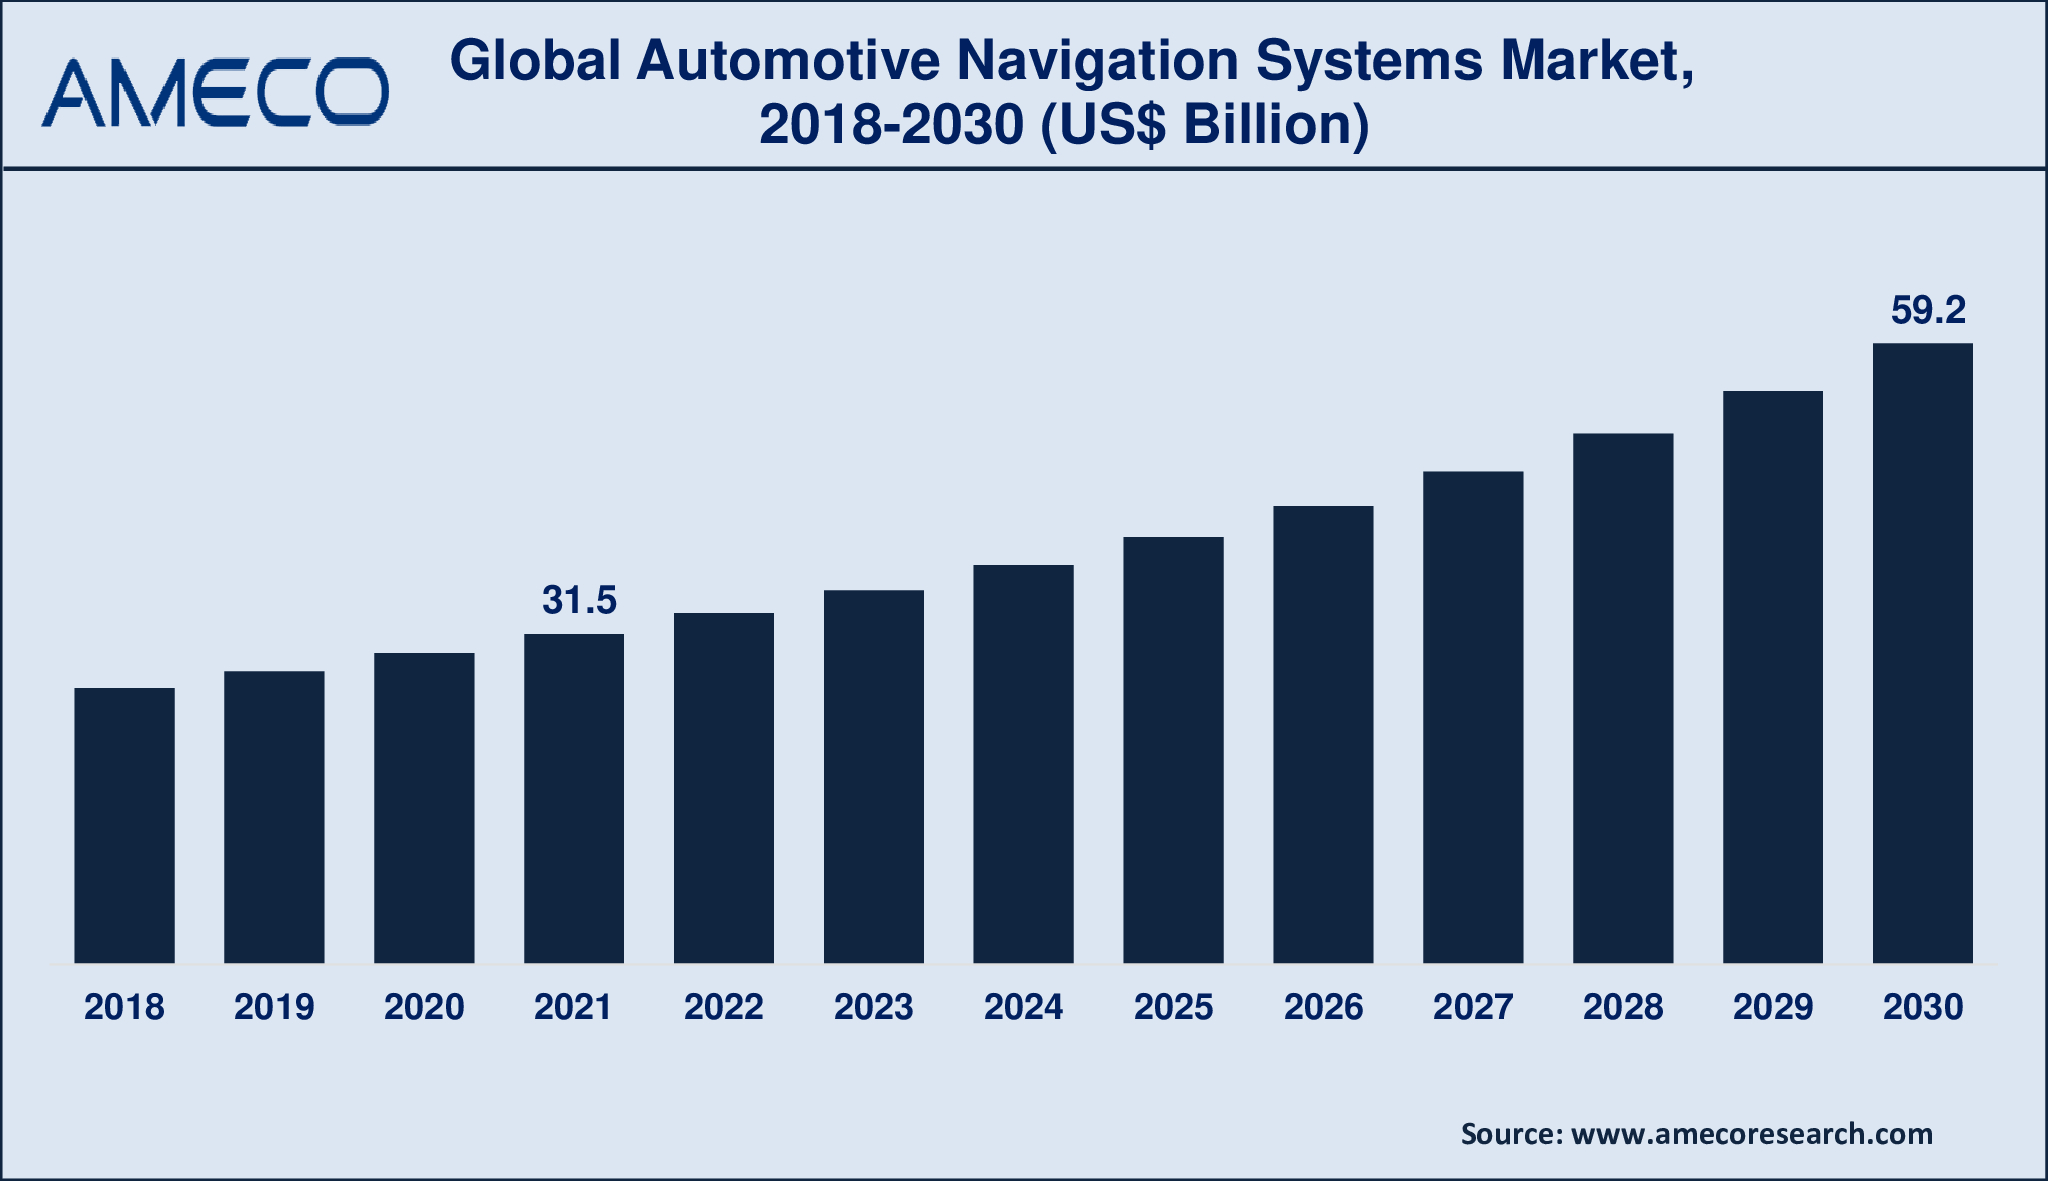 Automotive Navigation Systems Market Dynamics